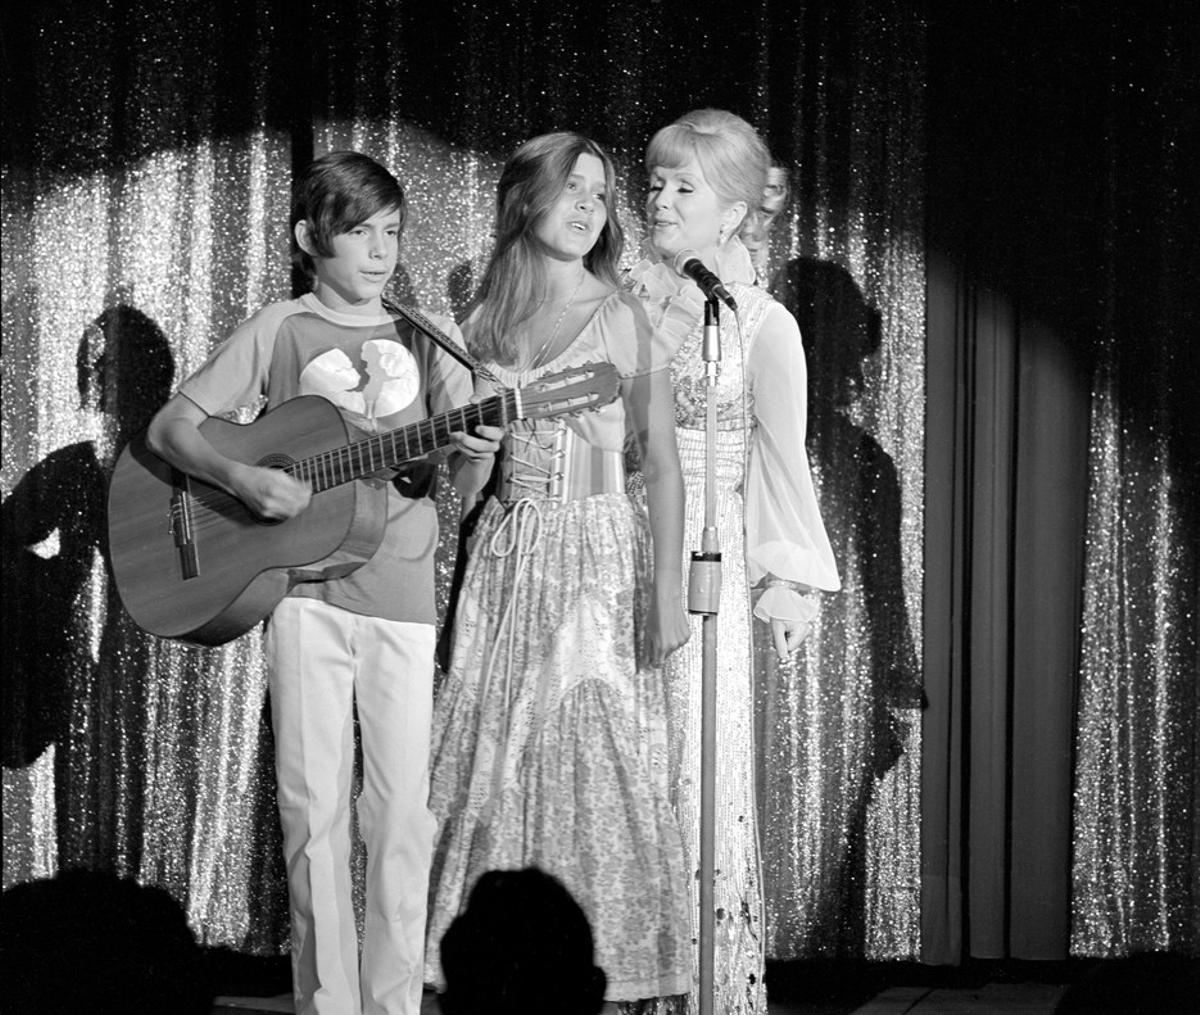 JGM06. LAS VEGAS (NV, EE.UU.), 28/12/2016.- Las actrices estadounidenses Debbie Reynolds (d) y sus hijos Carrie Fisher (c) y Todd Fisher (i) en la noche de apertura del espectáculo de Reynolds en el Desert Inn de Las Vegas, Nevada, EE.UU. el 28 de julio de 1971. Carrie Fisher murió a los 60 años en Los Ángeles el 27 de diciembre de 2016. Según informes de prensa de hoy, 28 de diciembre de 2016, Debbie Reynolds ha sido hospitalizada debido a un posible accidente cerebrovascular. EFE/CRÉDITO OBLIGATORIO: LVNB/JIM BRRUP via european pressphoto agency/SOLO USO EDITORIAL/NO VENTAS